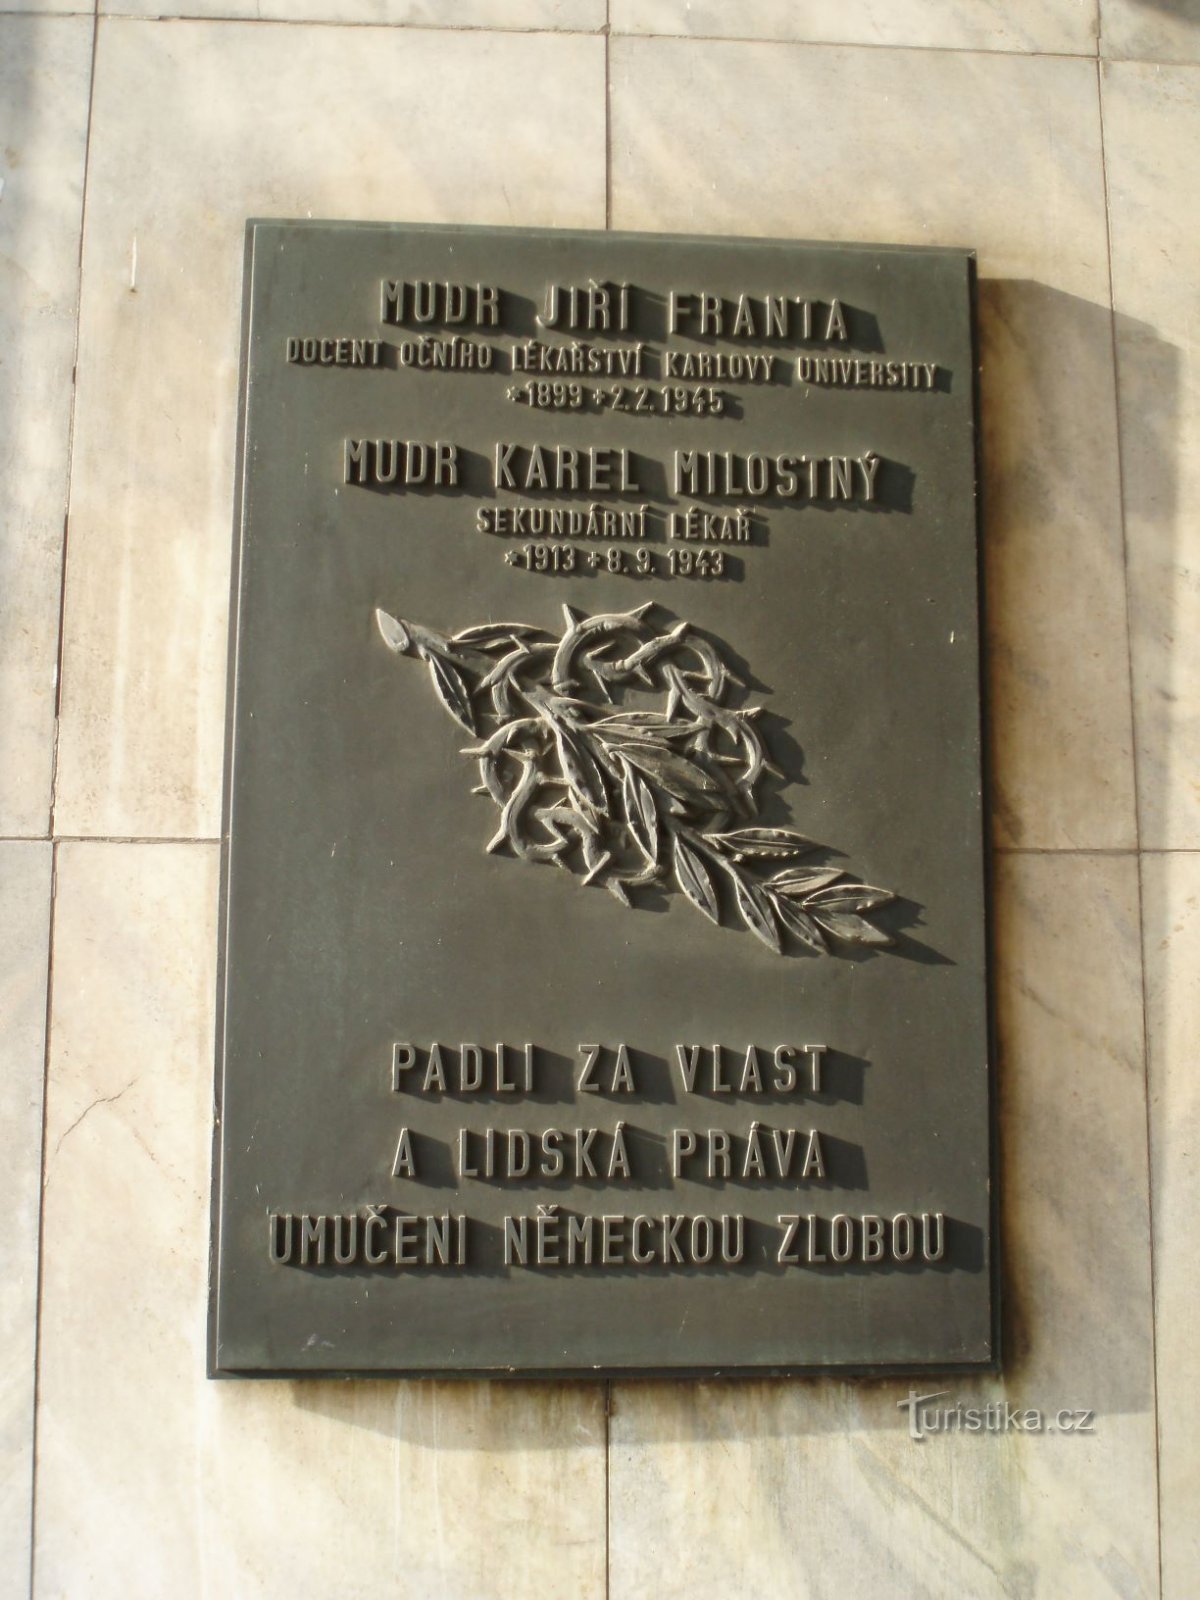 Меморіальні дошки на університетській лікарні Градец-Кралове (29.11.2011 листопада XNUMX р.)